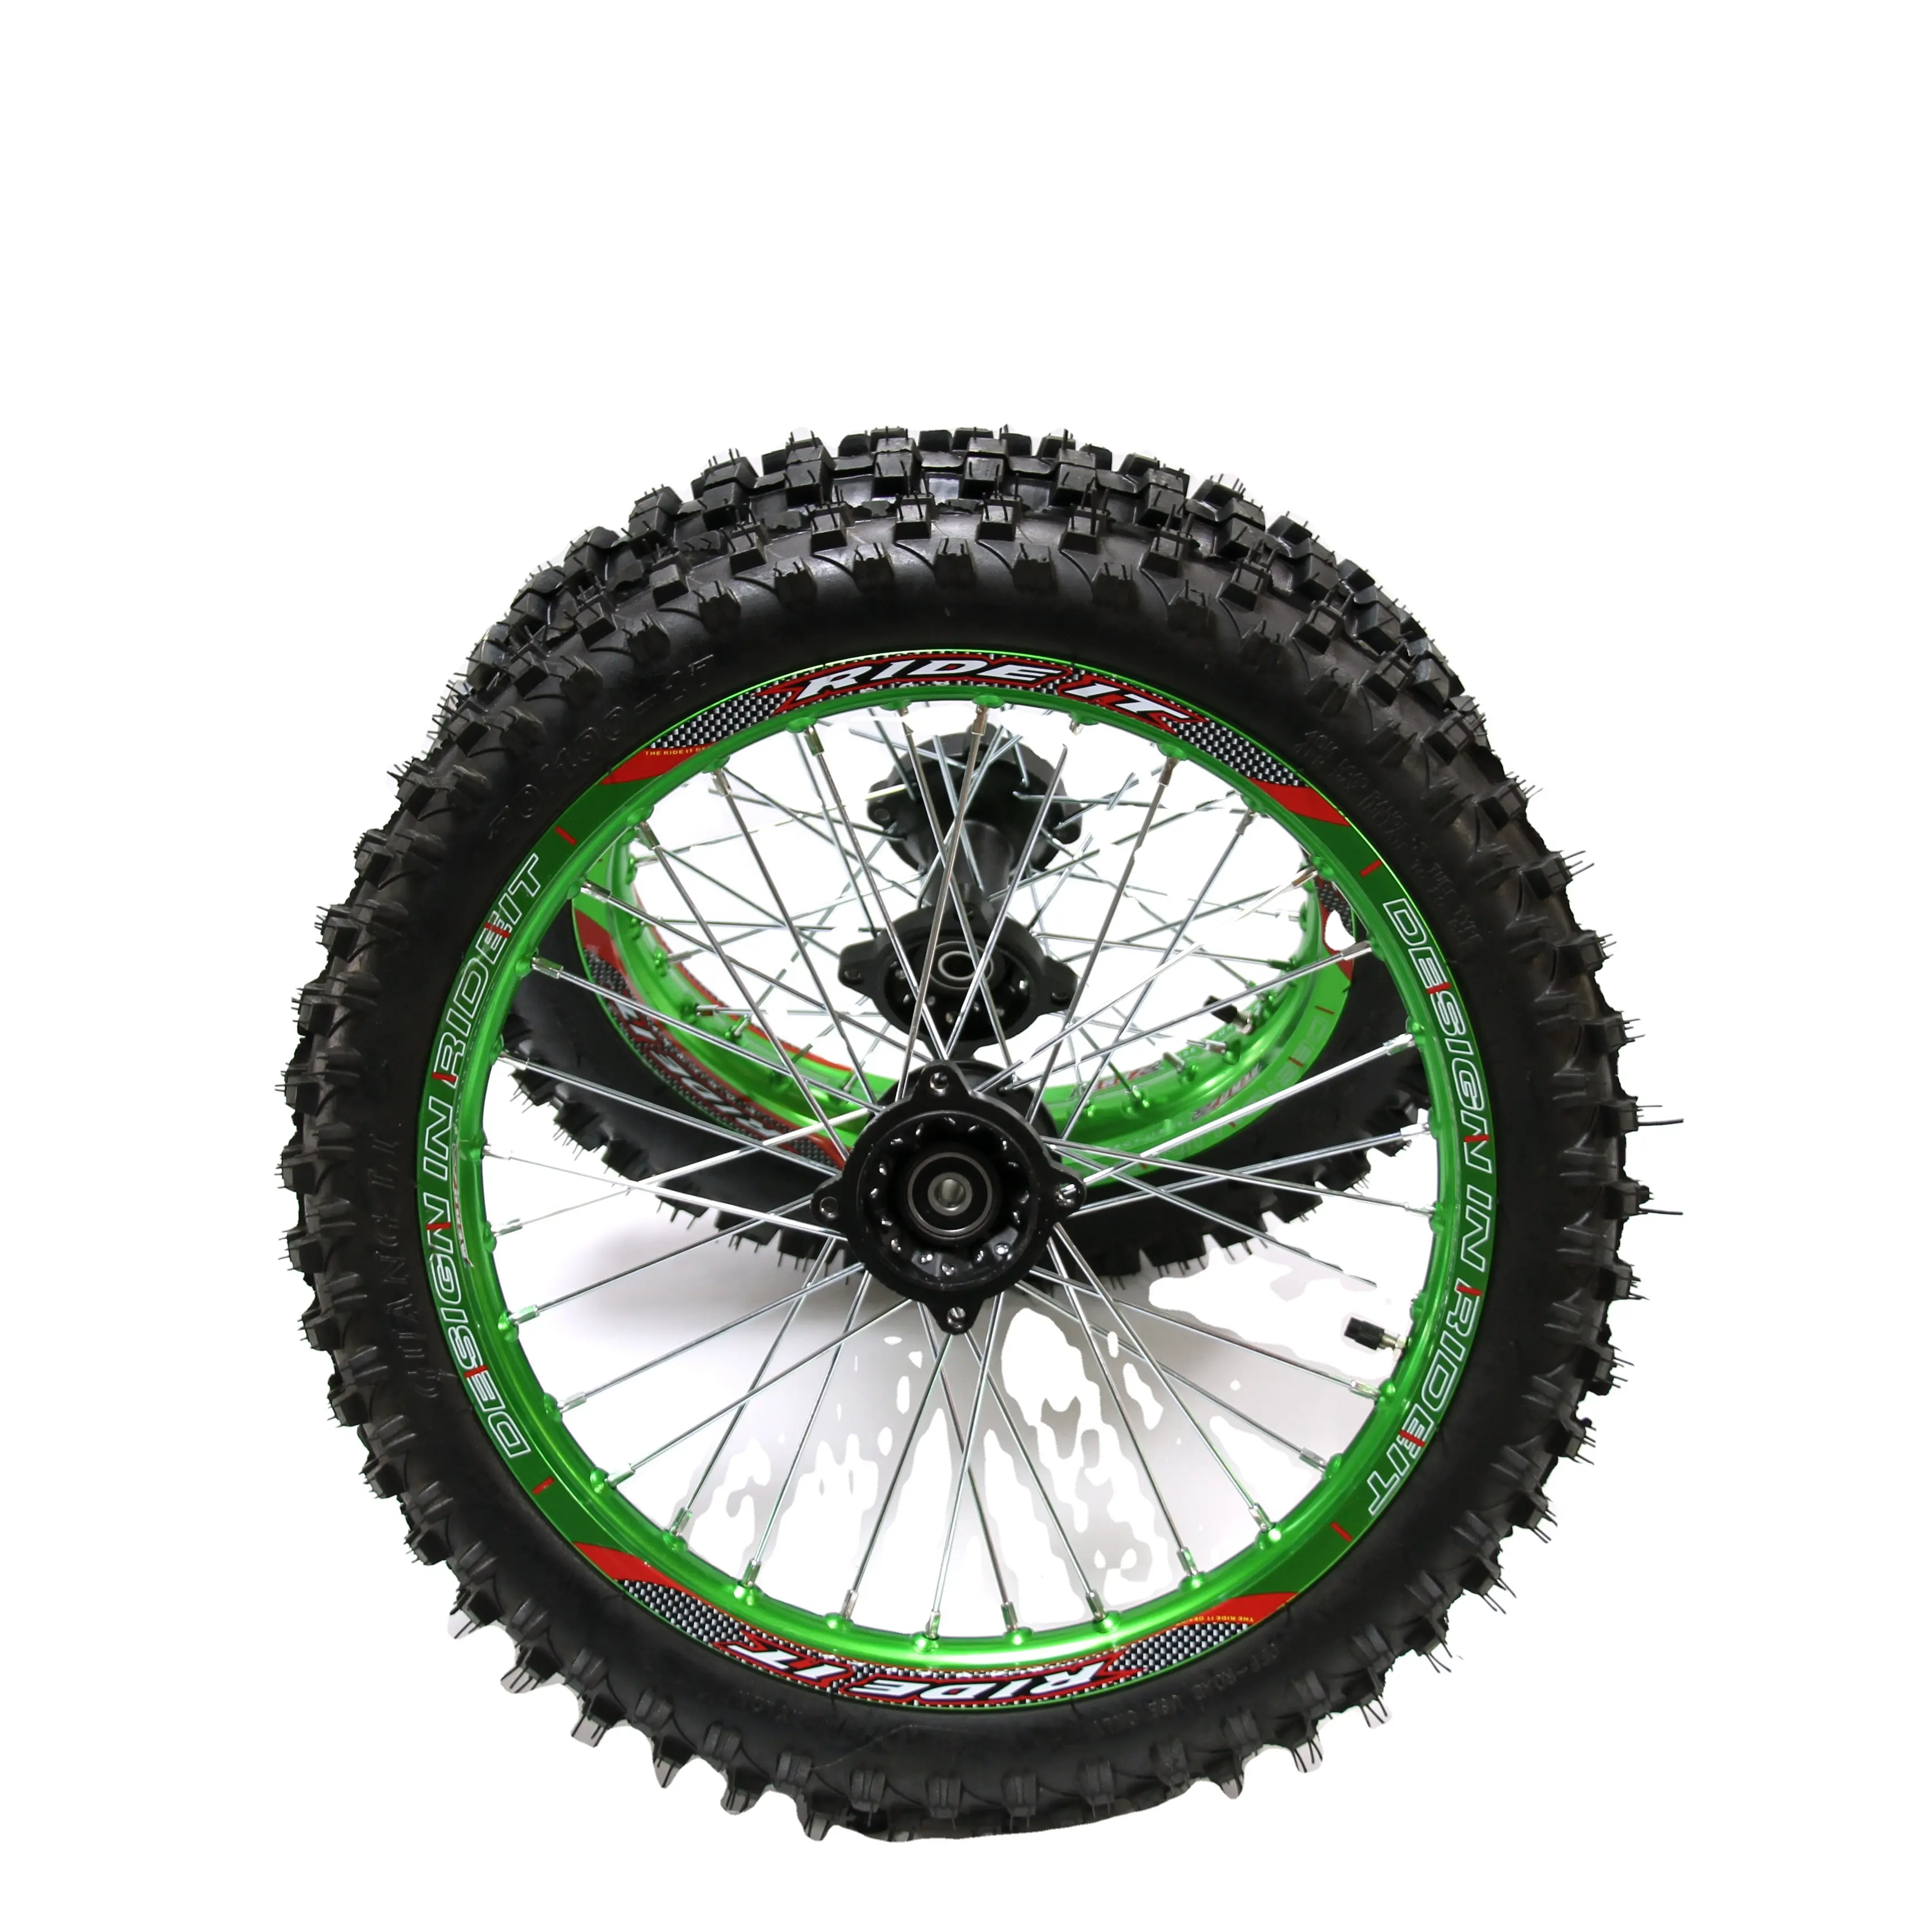 Neumático de aleación para bicicleta de cross, llanta con tubo de tamaño delantero 70/100-17, tamaño trasero 90/100-14